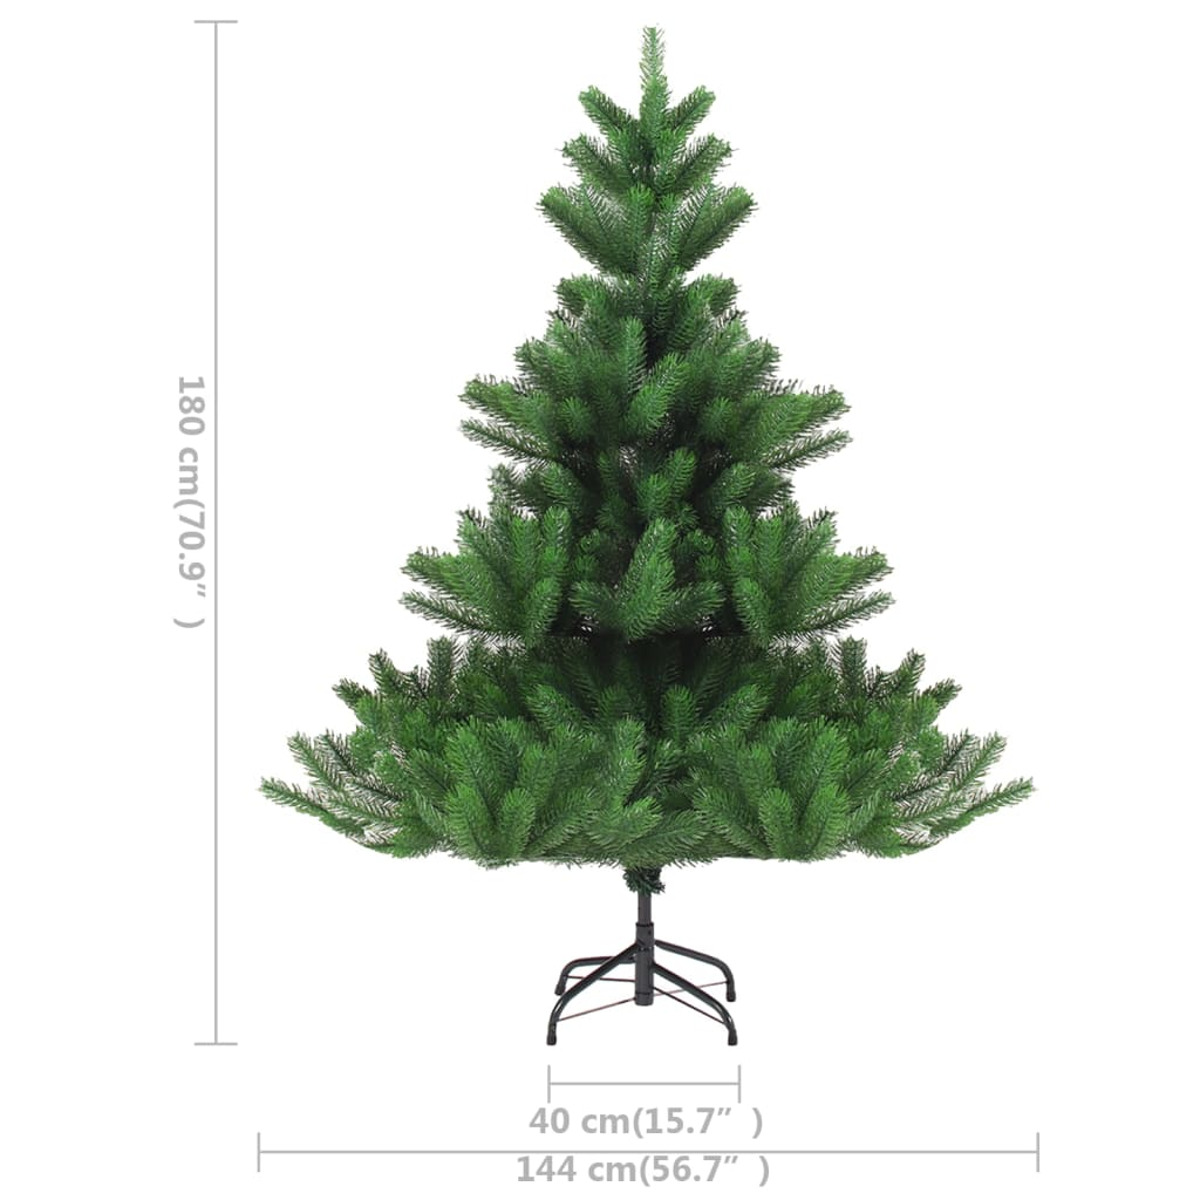 VIDAXL 3077560 Weihnachtsbaum